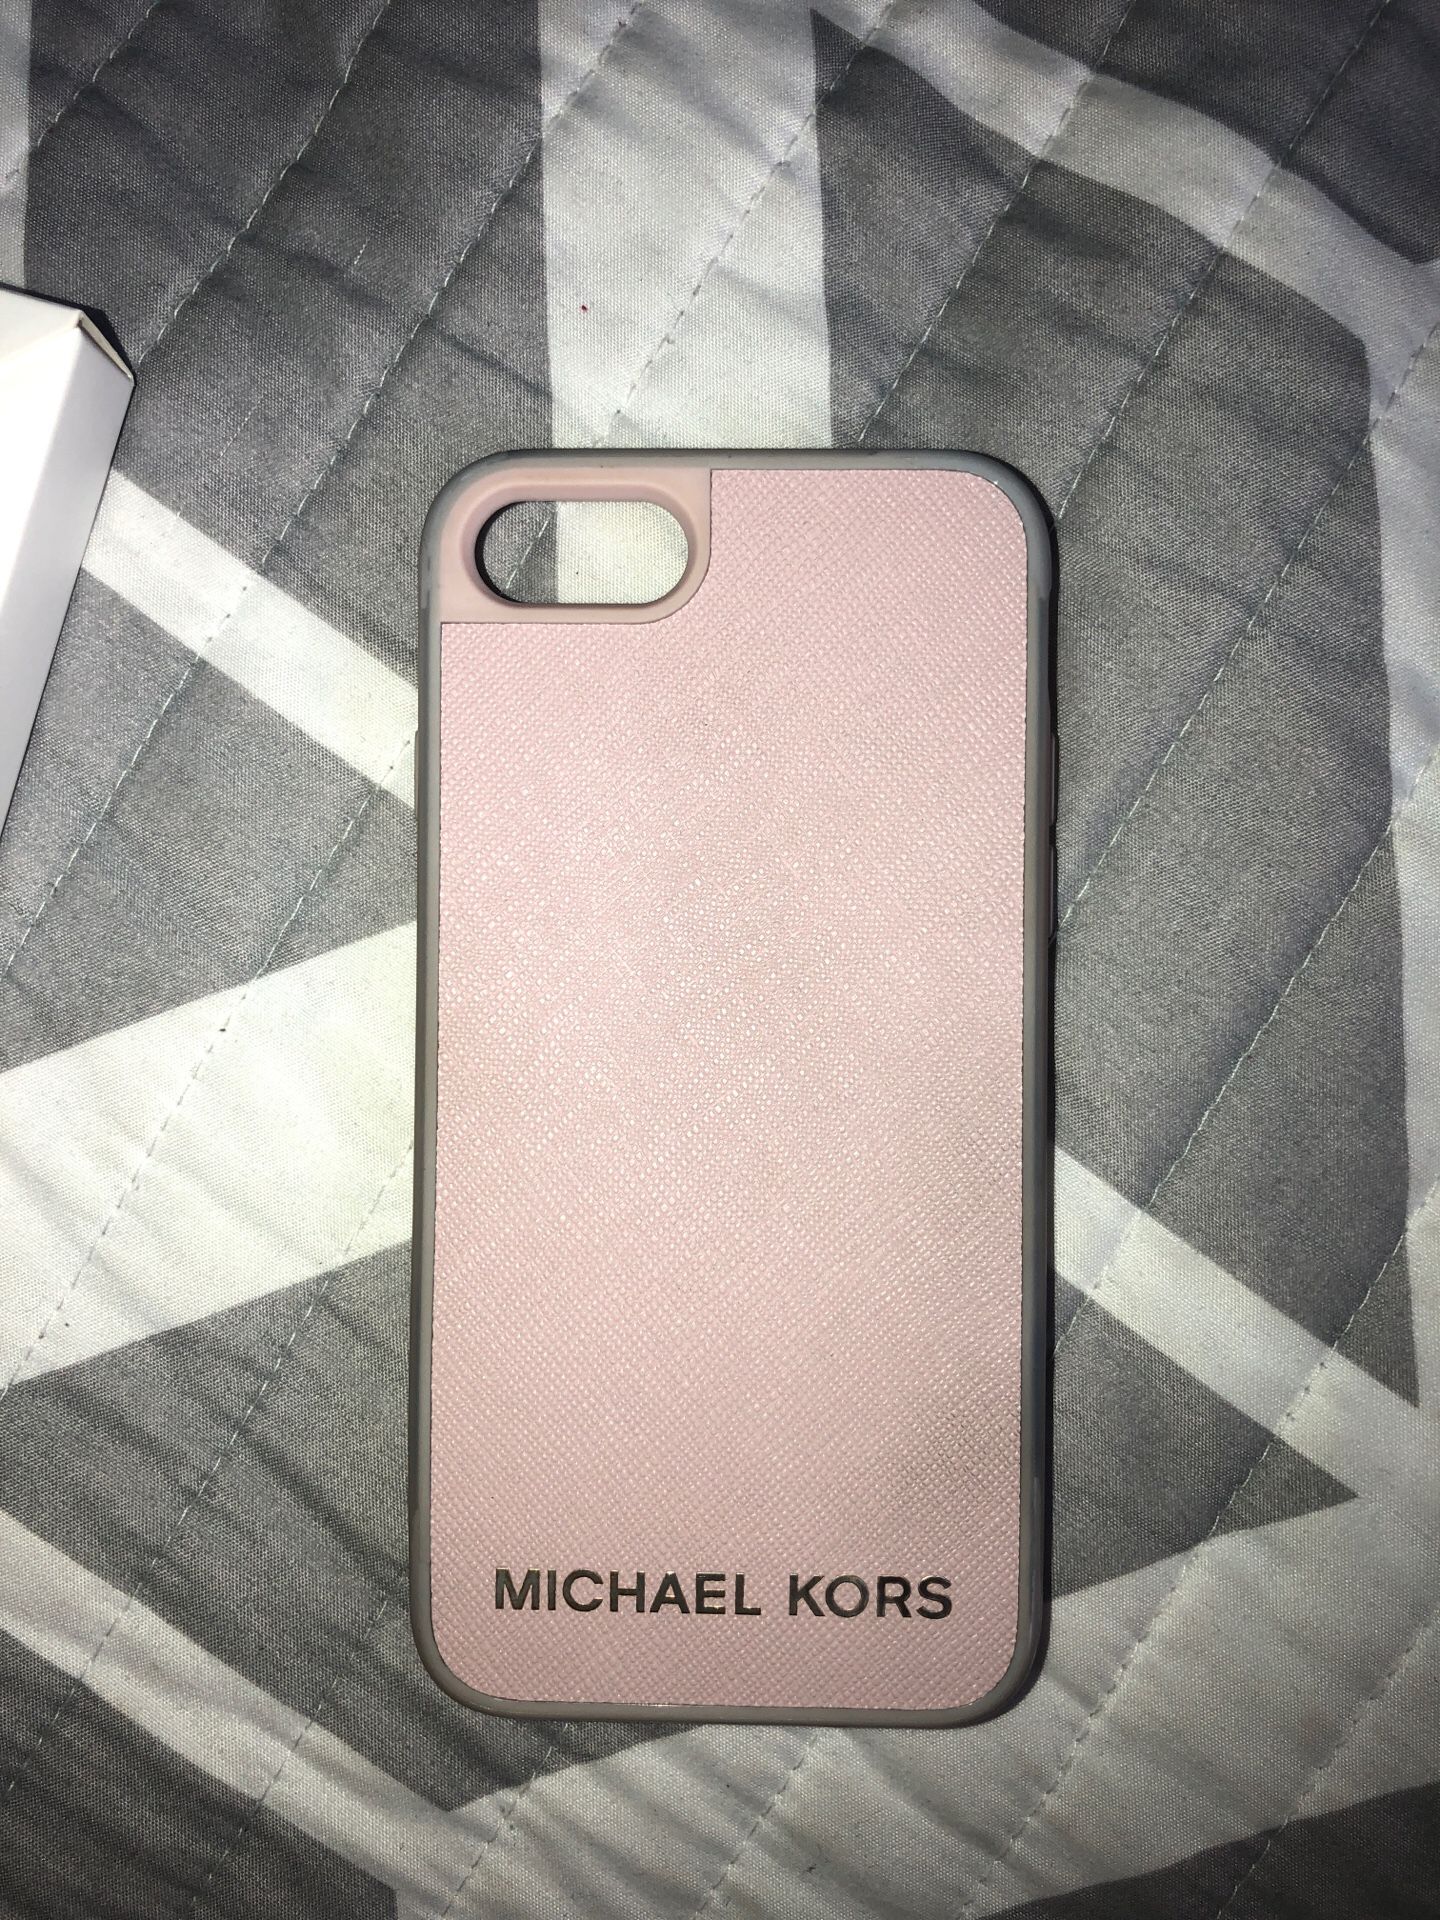 Frustratie bericht Drank Michael Kors iPhone 6,7,8 case for Sale in Corona, CA - OfferUp